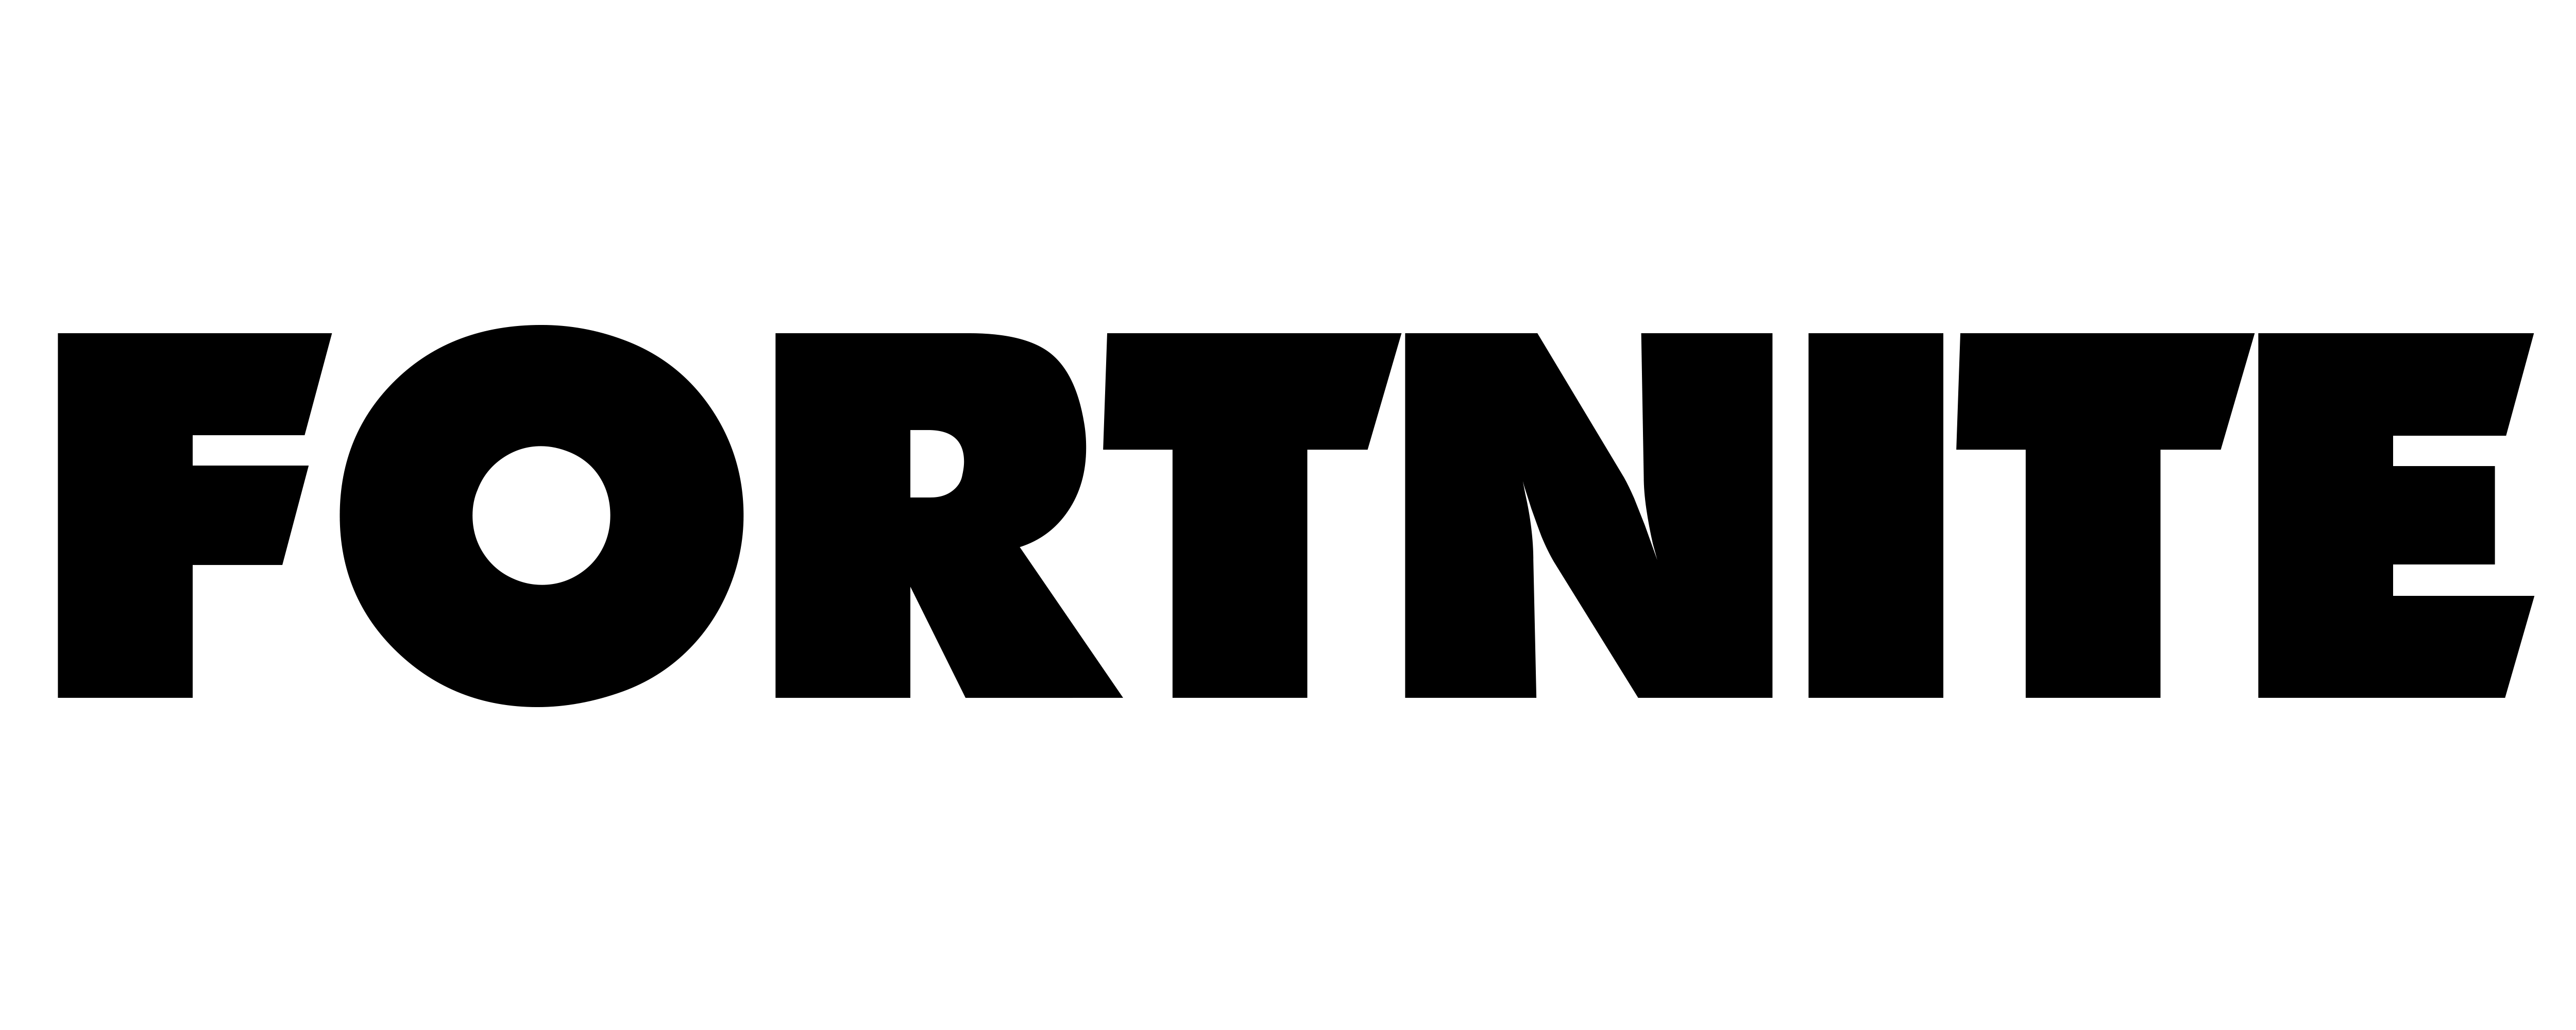 Fortnite Logo Png Transparent Background Free Download 47415